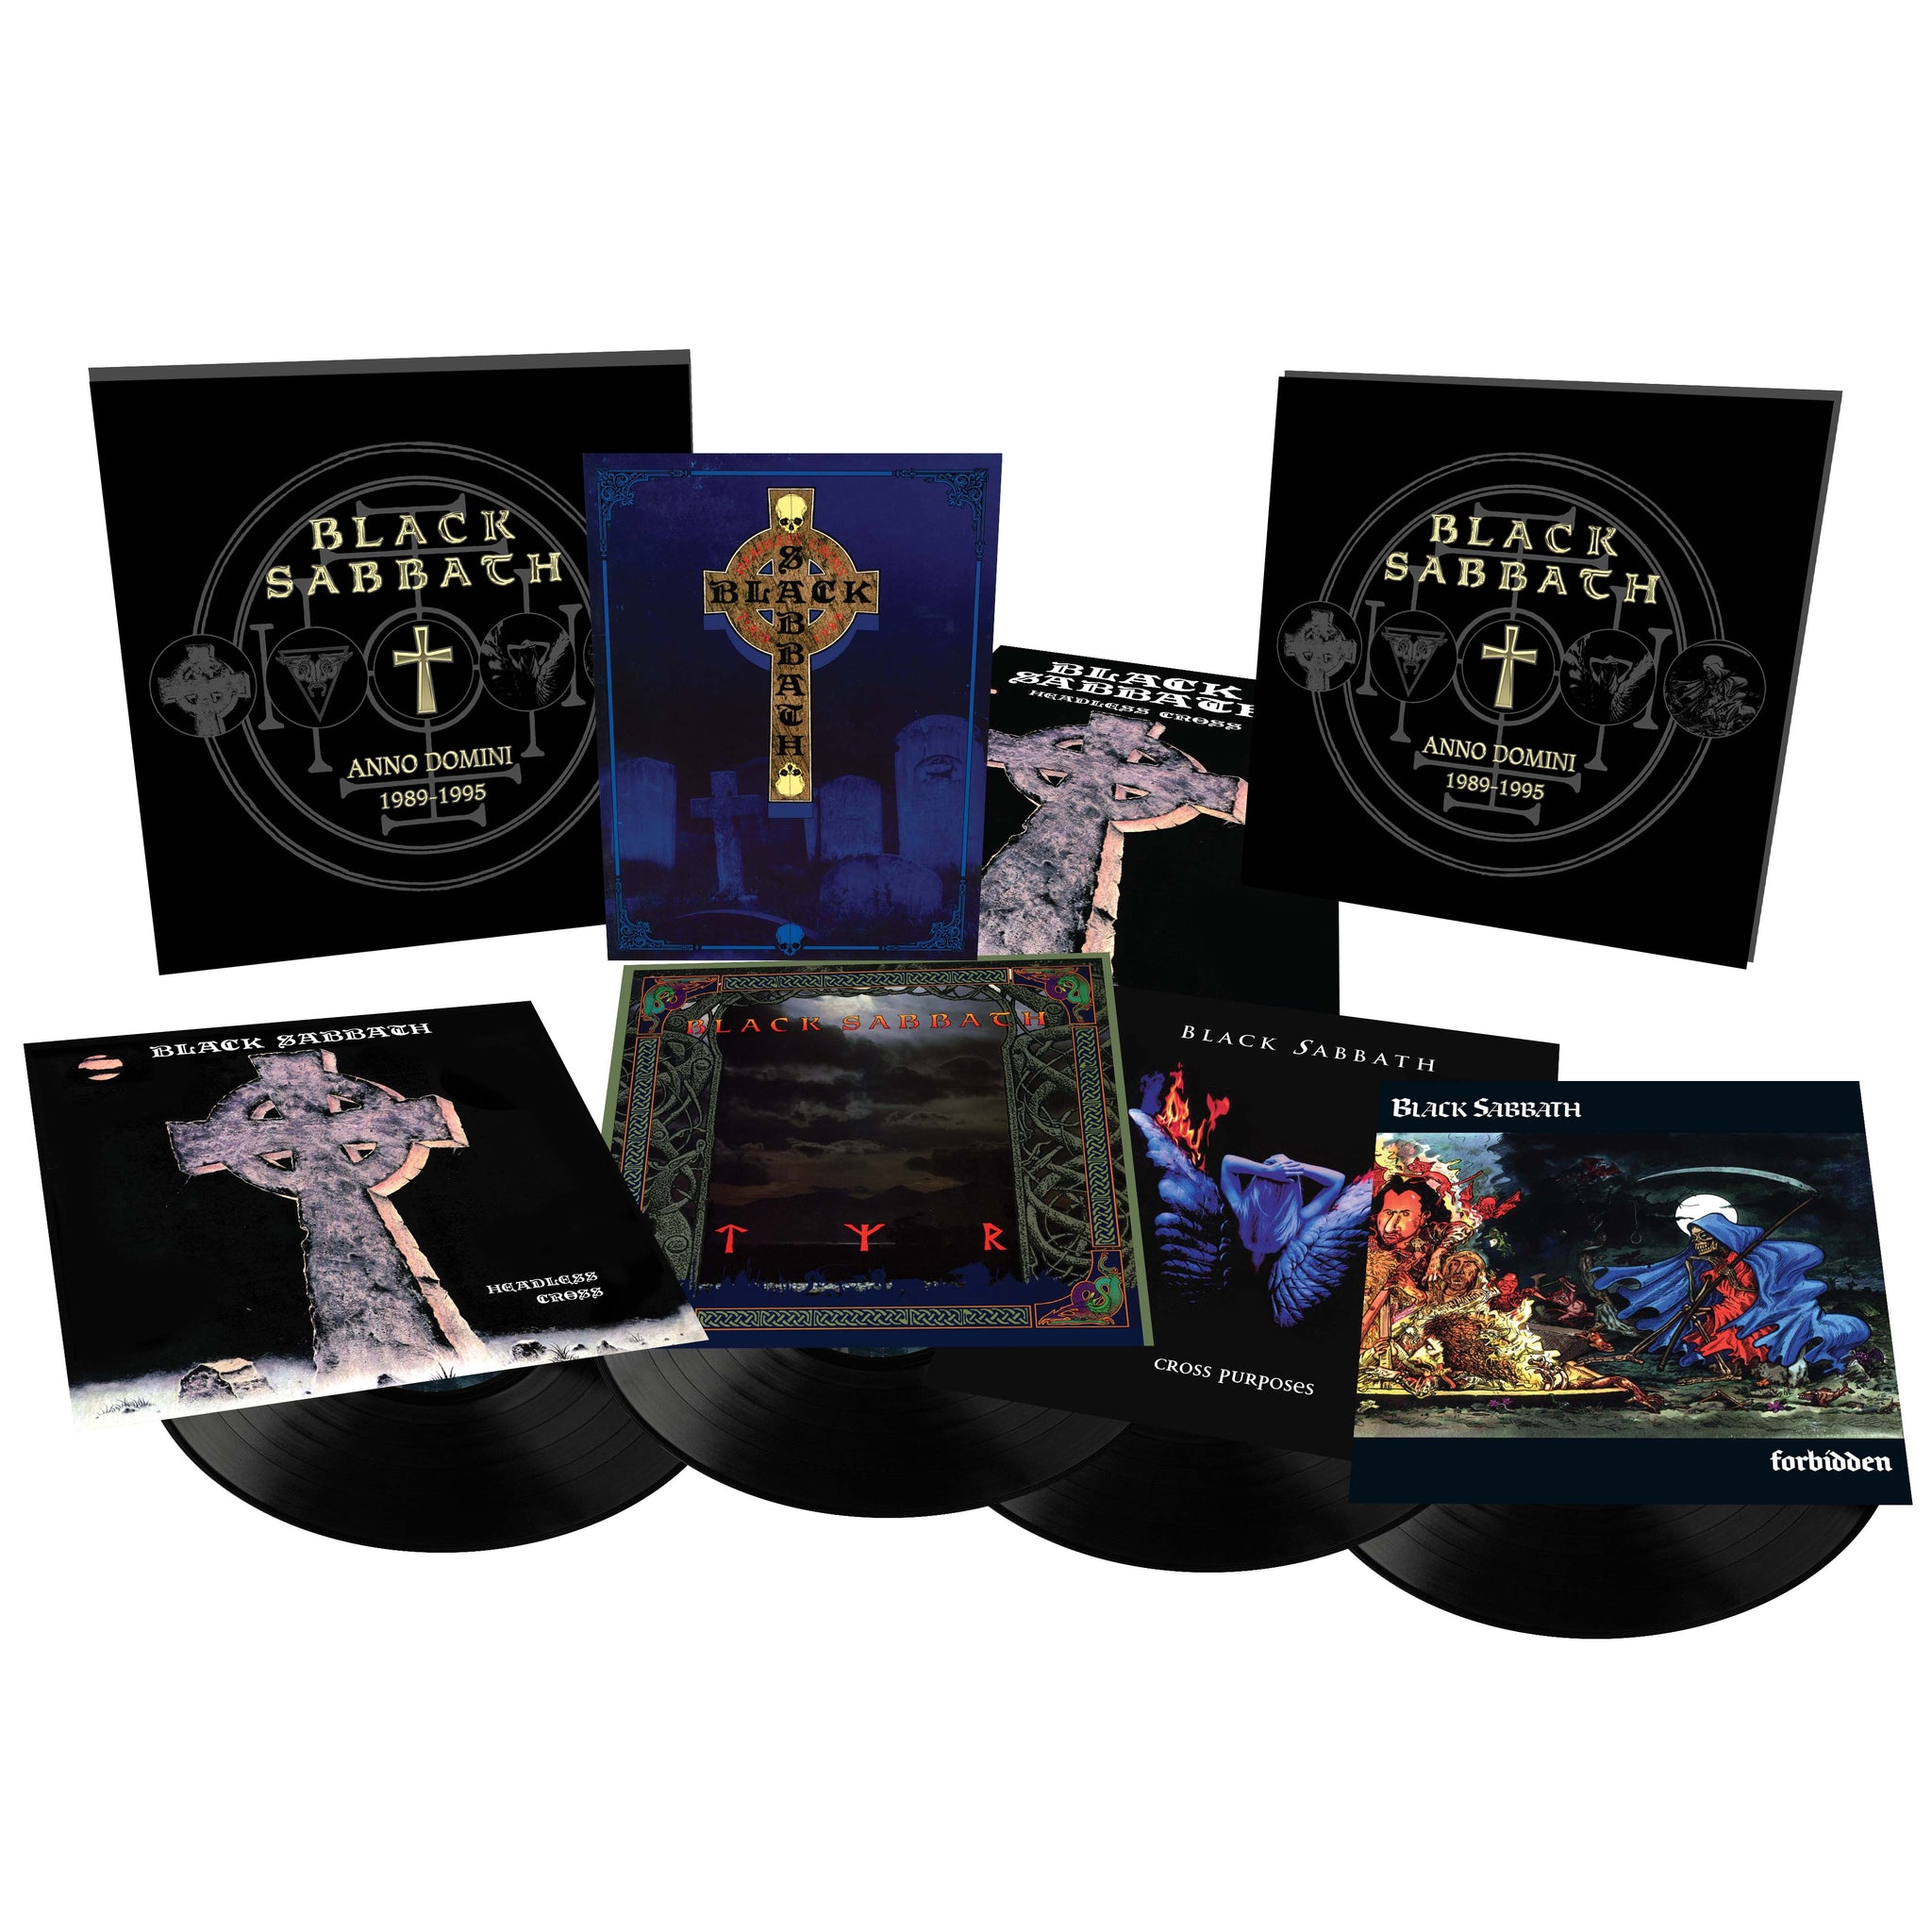 Black Sabbath "Anno Domini: 1989-1995" Super Deluxe 4 Vinyl LP Box Set - PRE-ORDER